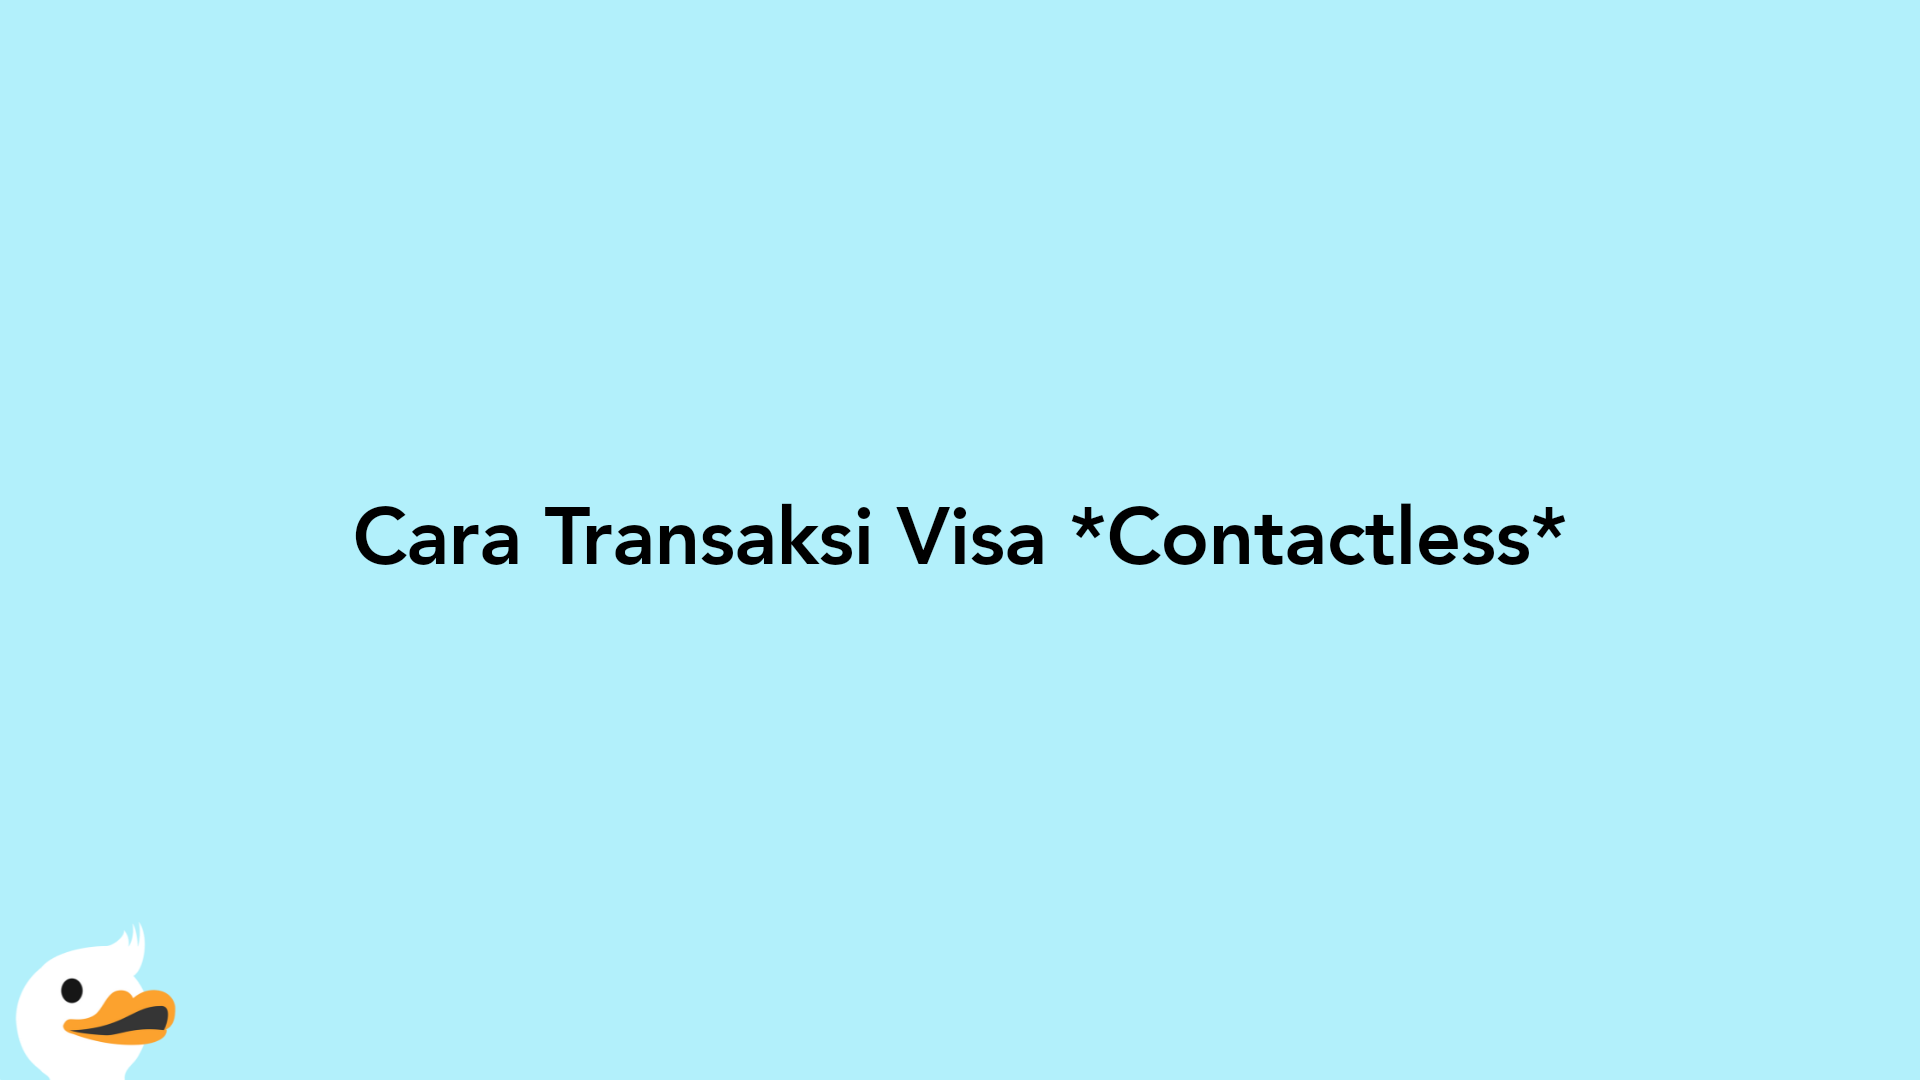 Cara Transaksi Visa Contactless